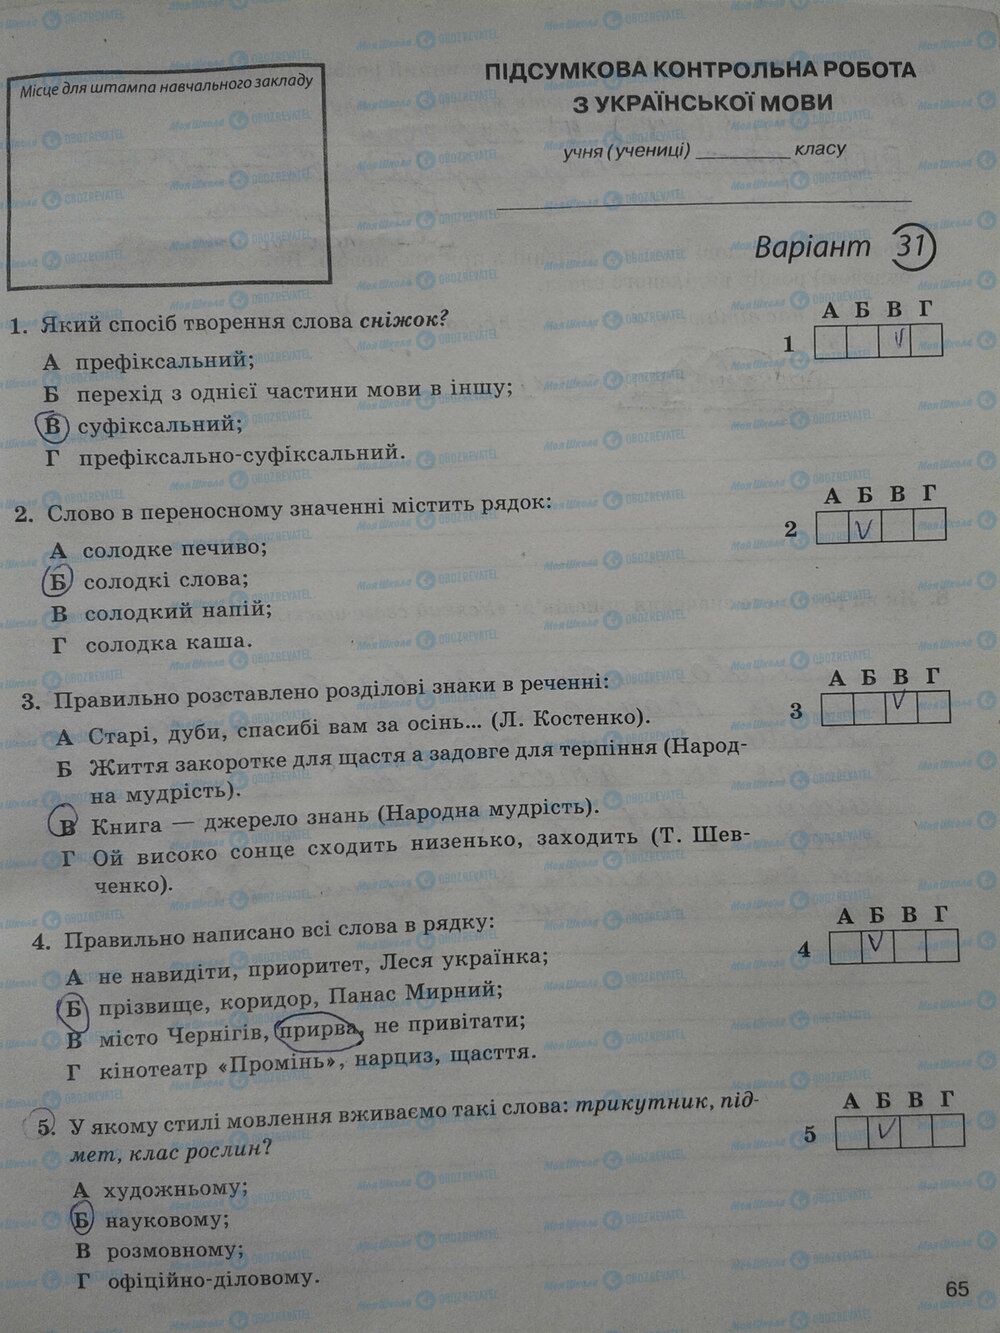 ГДЗ Укр мова 5 класс страница стр. 65